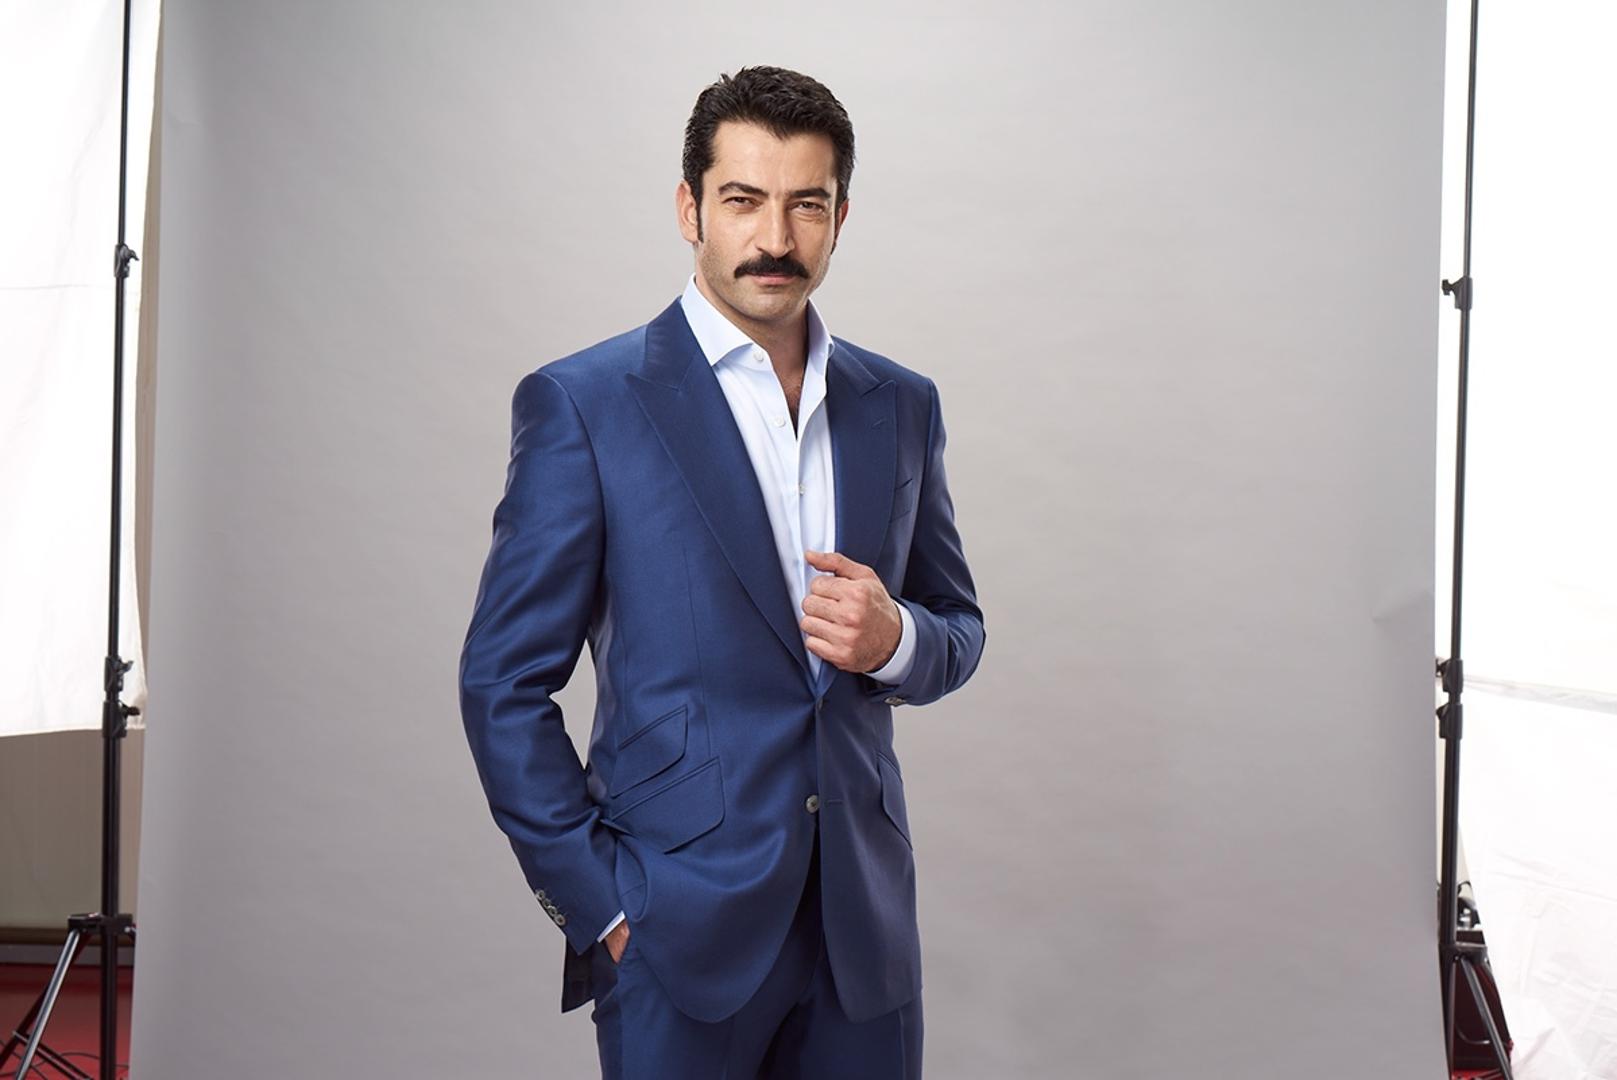 U svijet glume uveo ga je poznati turski redatelj Osman Sınav, koji mu je dodijelio
ulogu Yusufa Miroglua u poznatoj turskoj seriji “Deli Yürek” (“Ludo srce”).